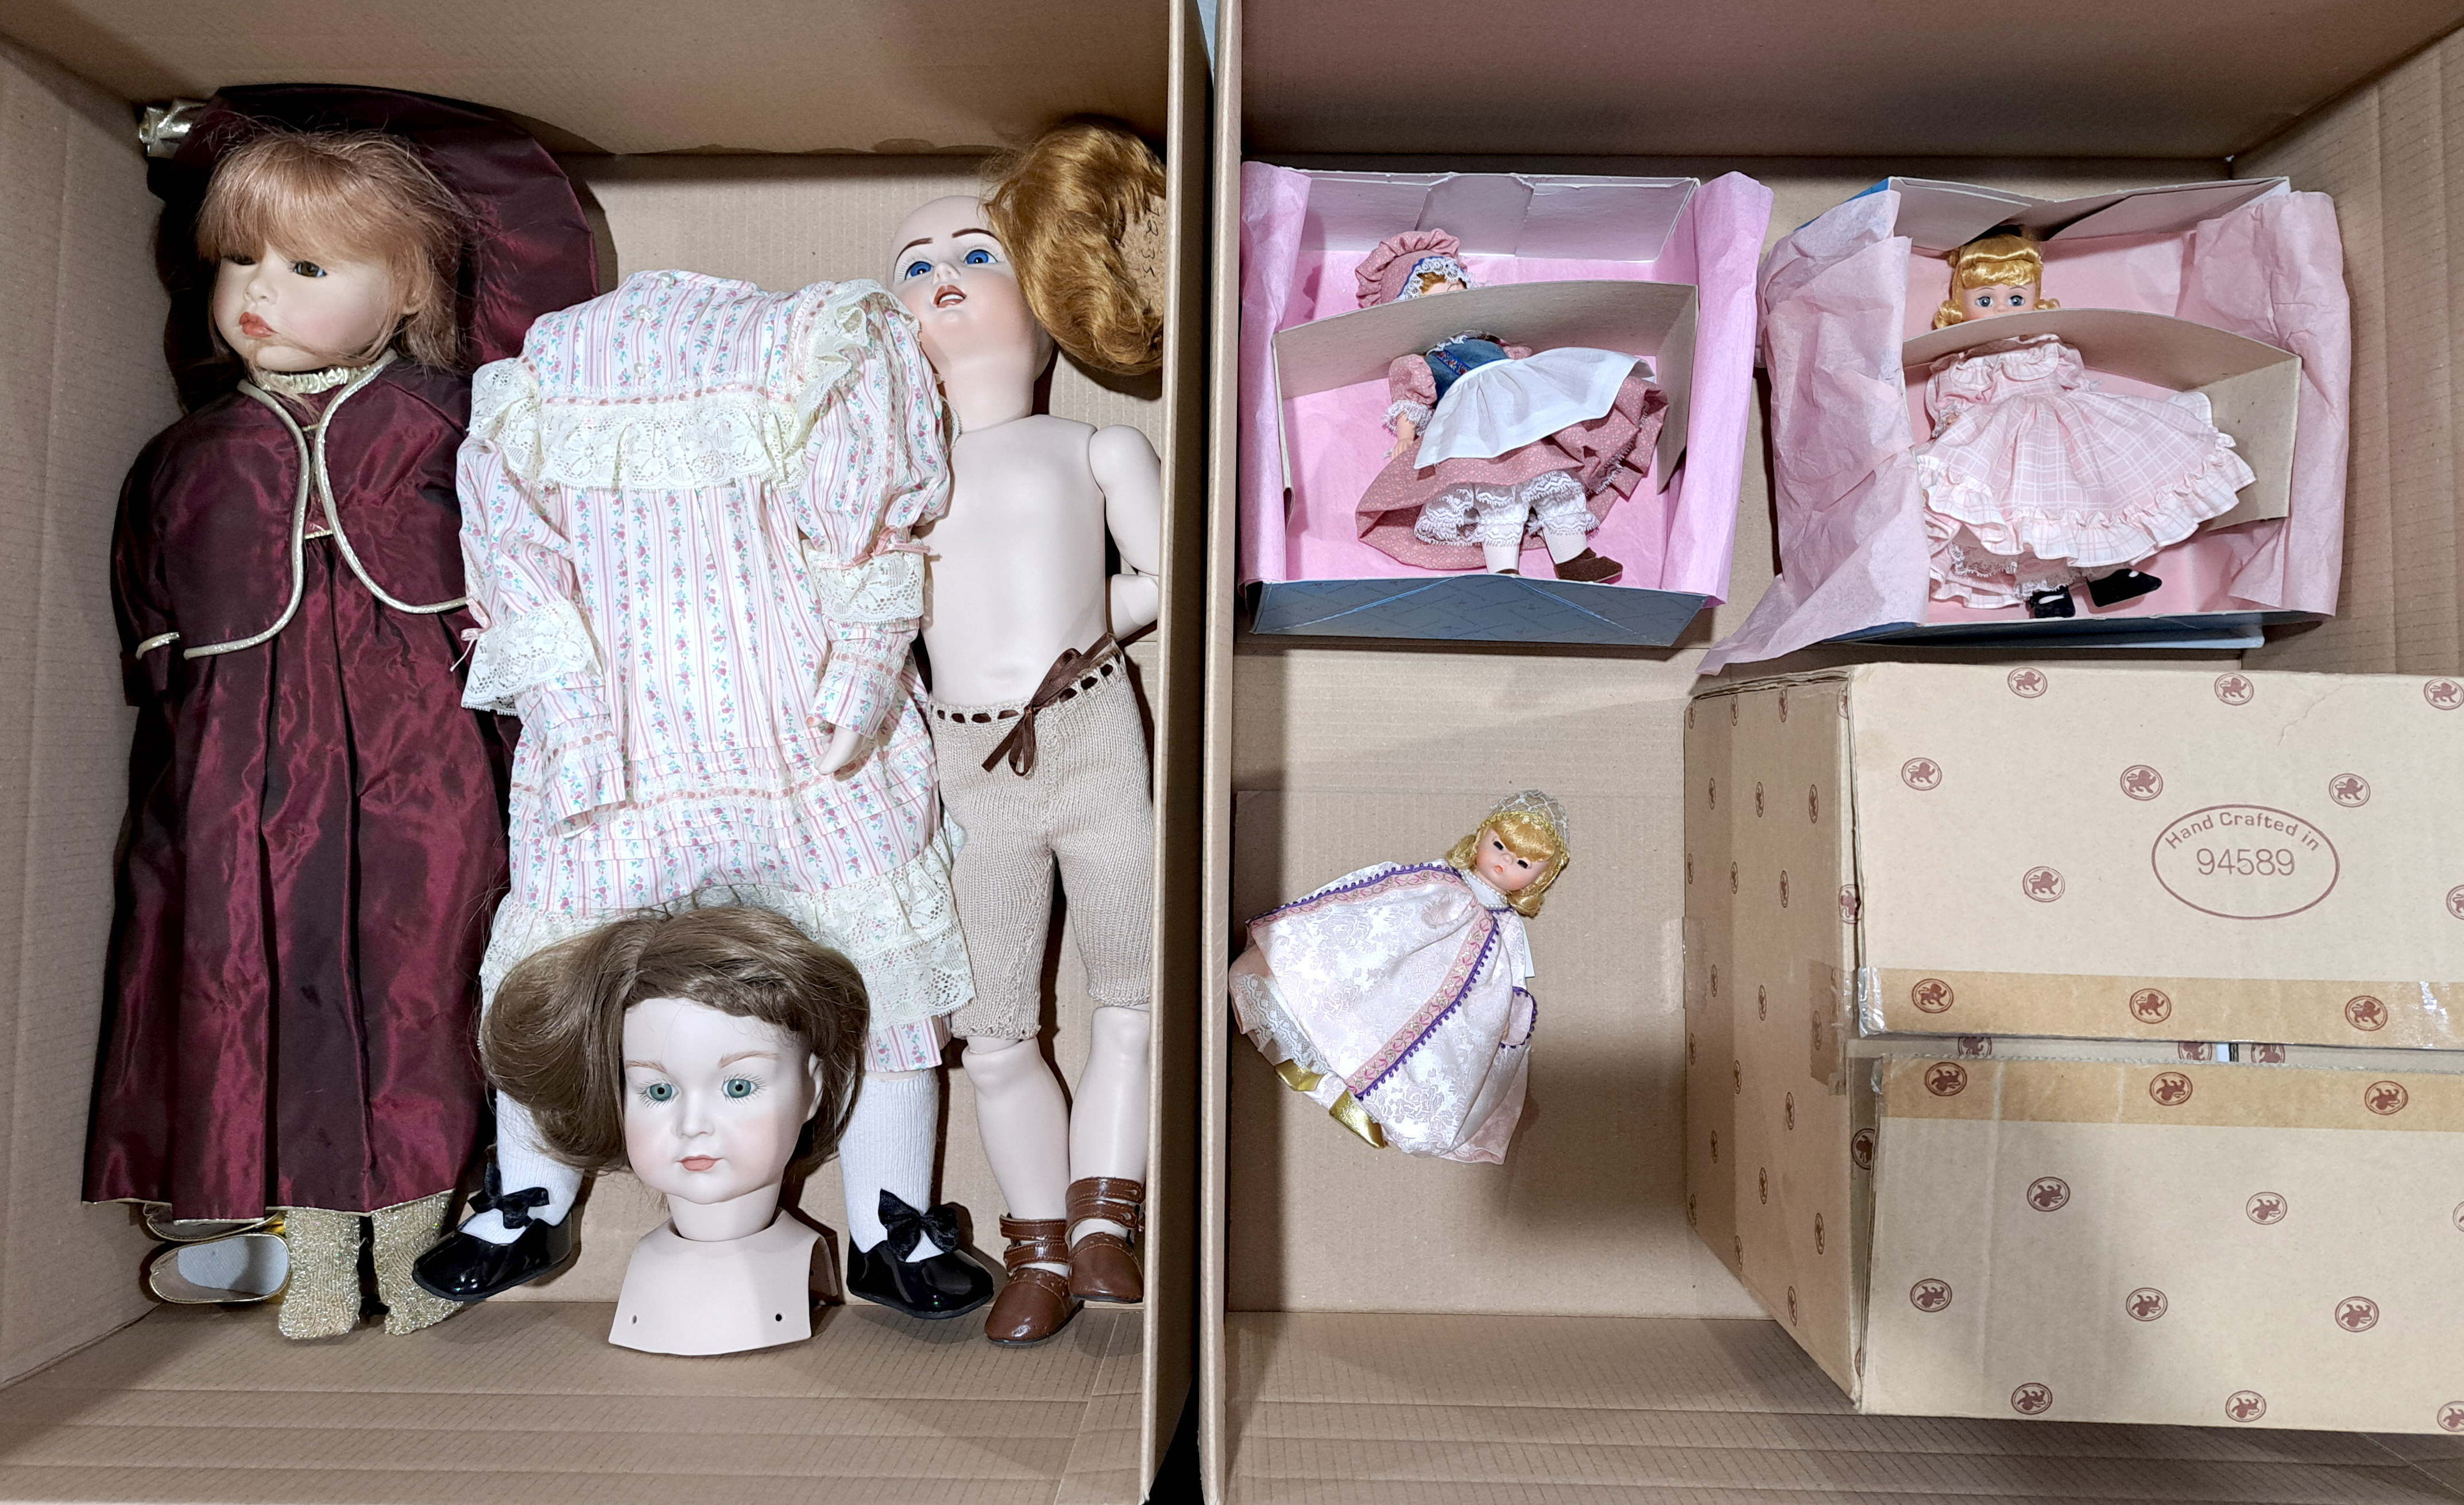 Bisque & Plastic dolls